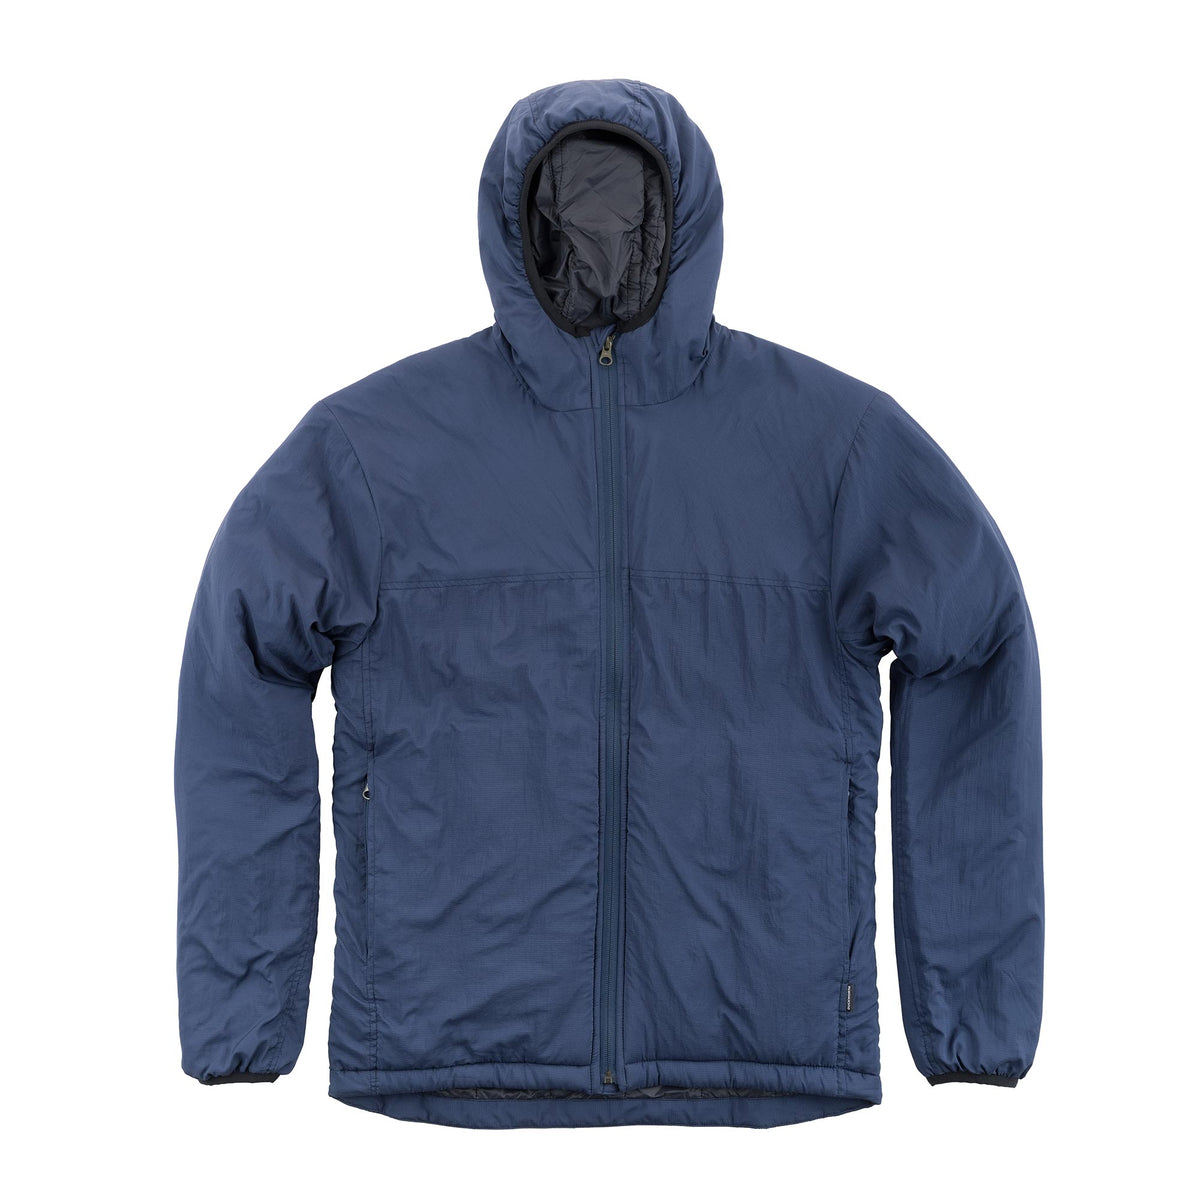 Men's Full Zip Rain Jacket with Hood - Cloud